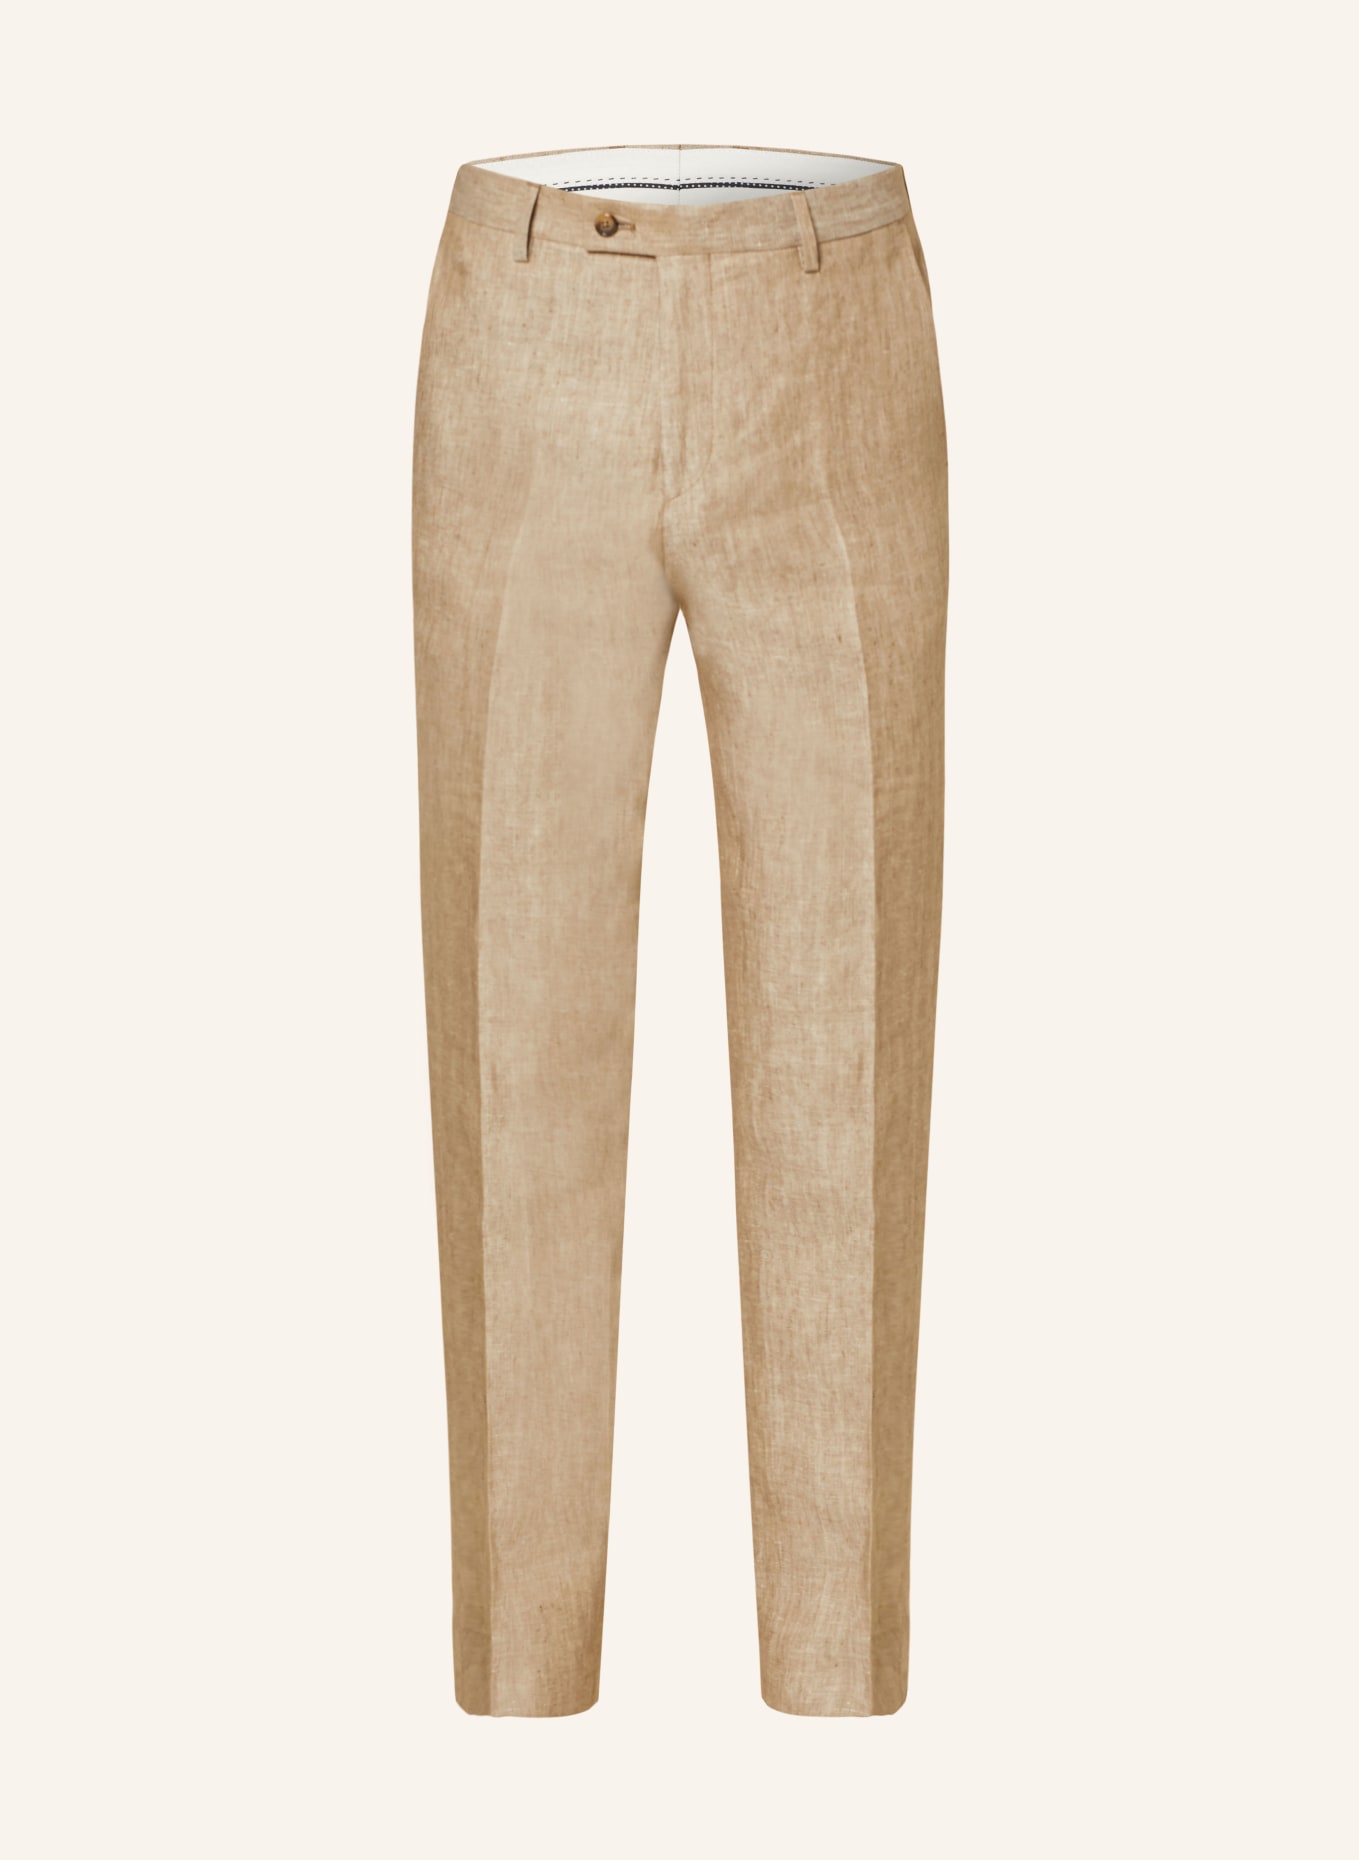 SAND COPENHAGEN Anzughose Slim Fit aus Leinen, Farbe: BEIGE (Bild 1)